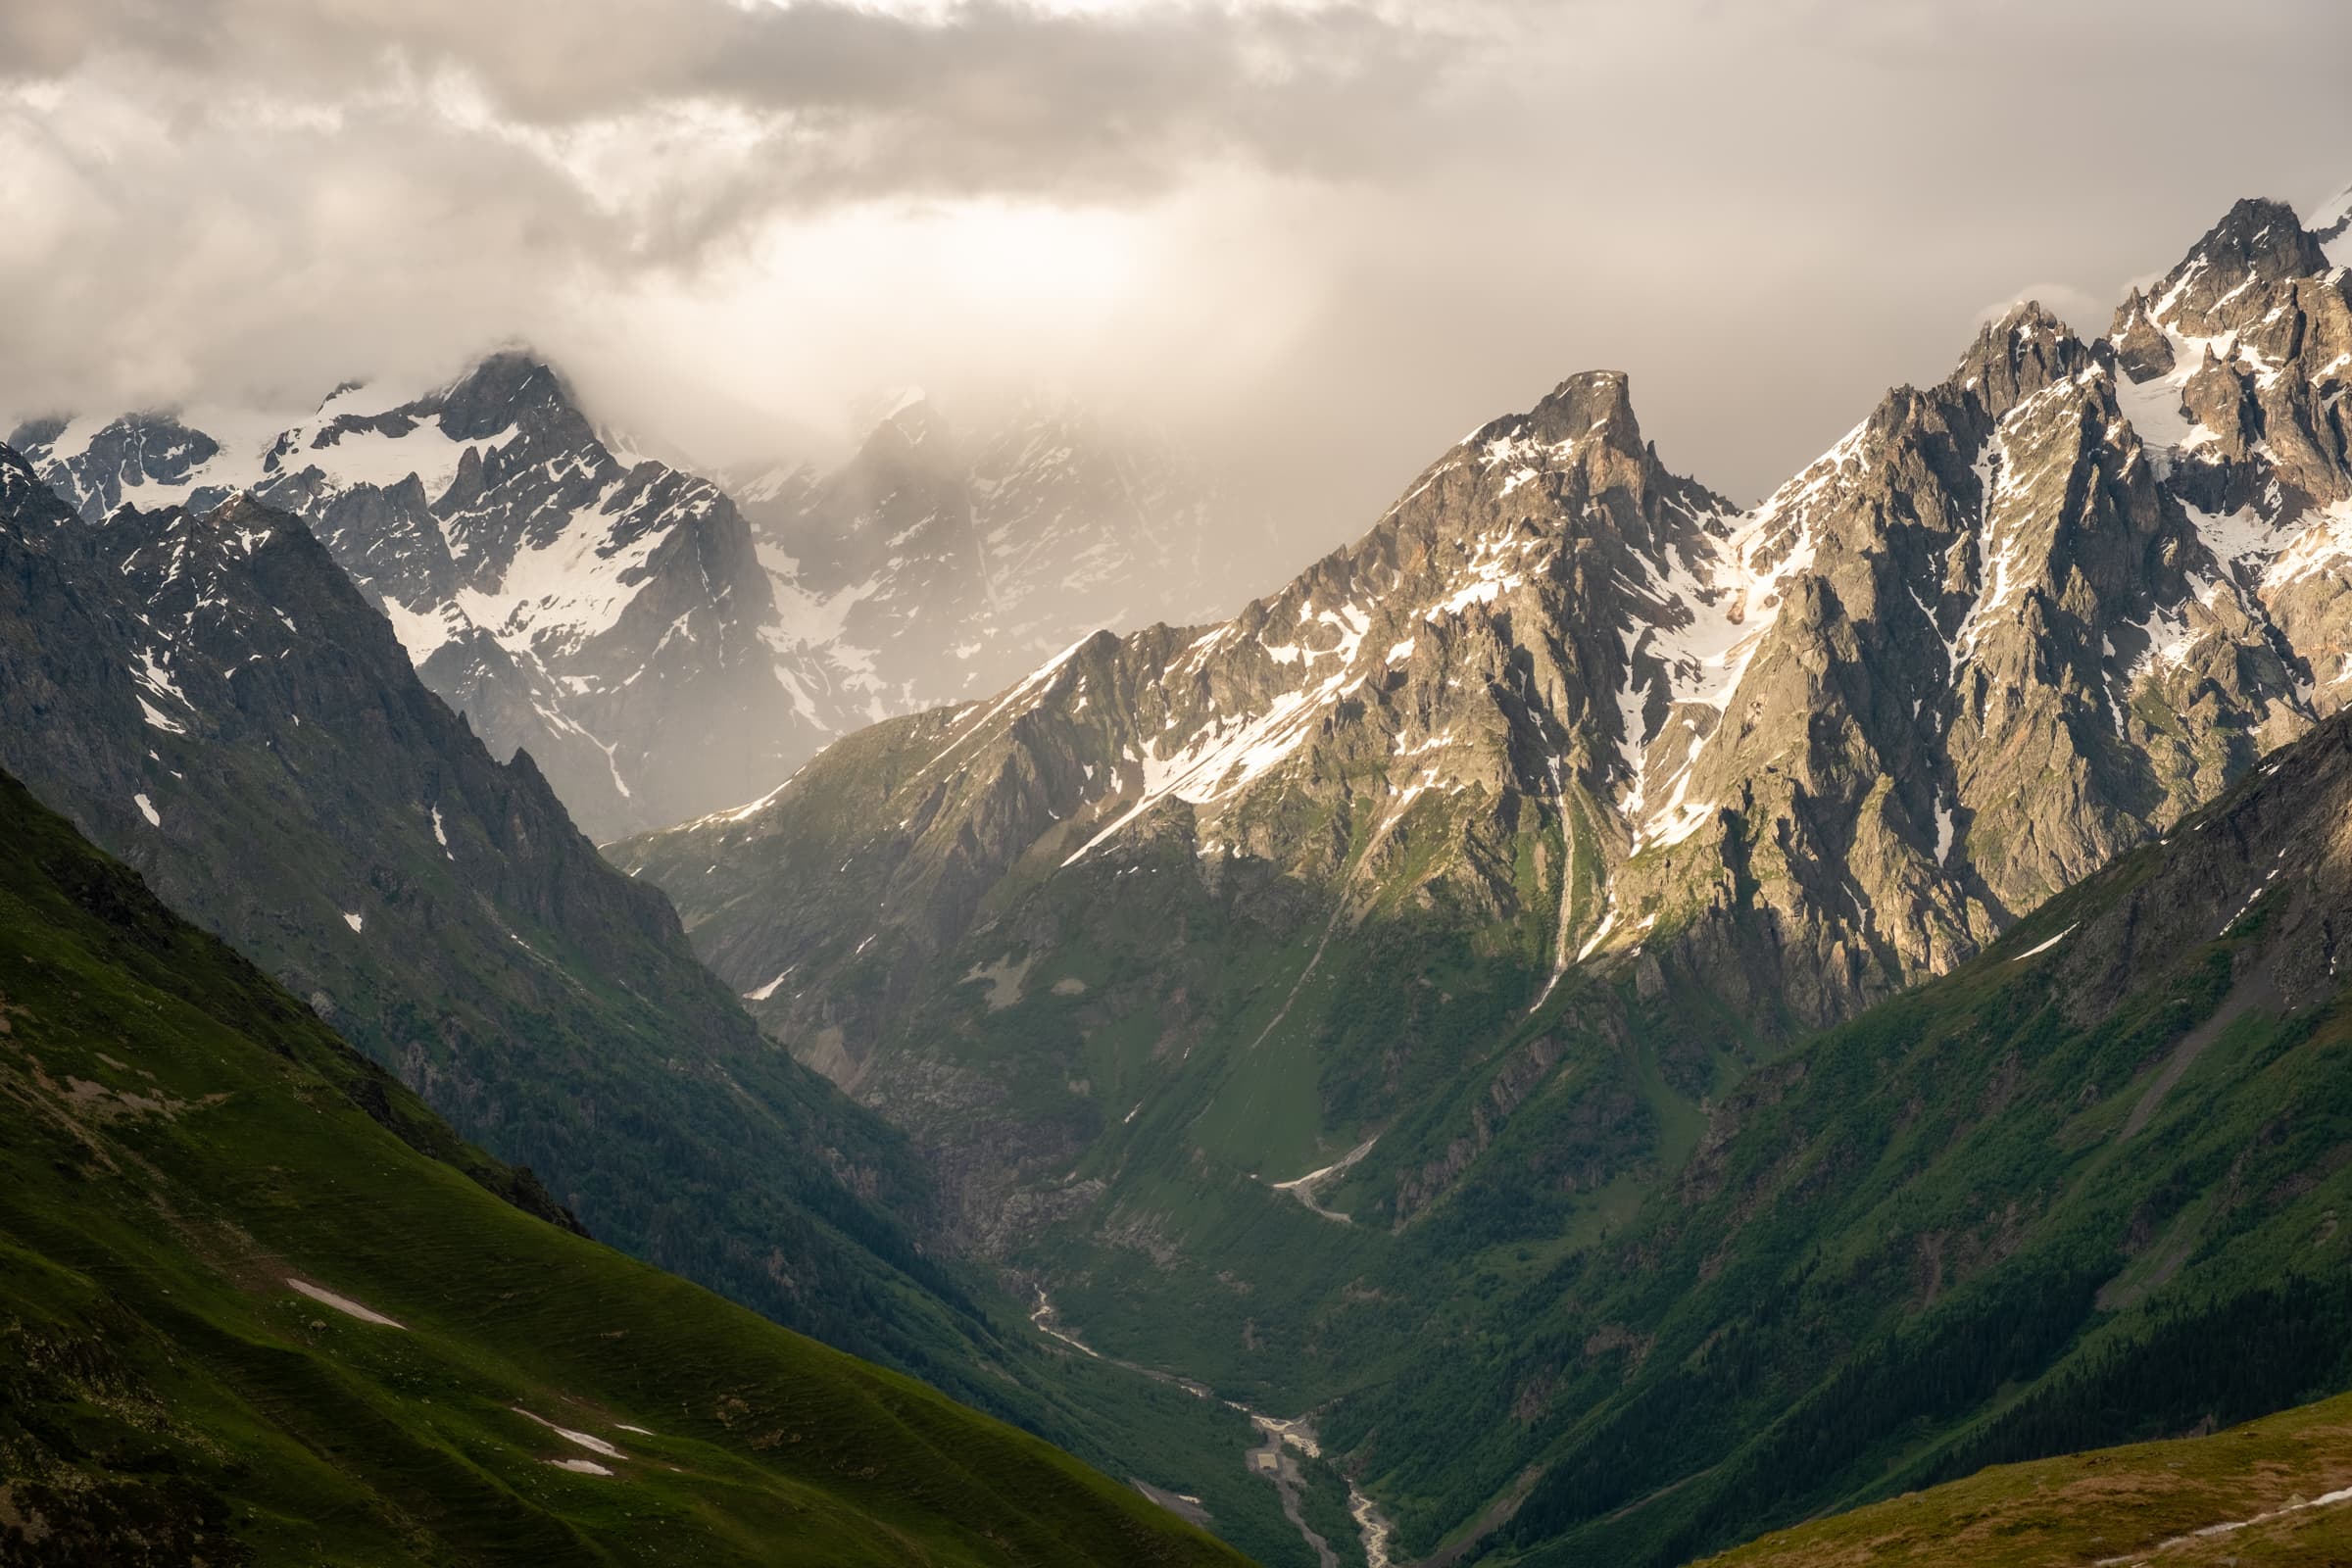 Rain and sun in the menacing peaks of the Caucasus, Svaneti, Georgia